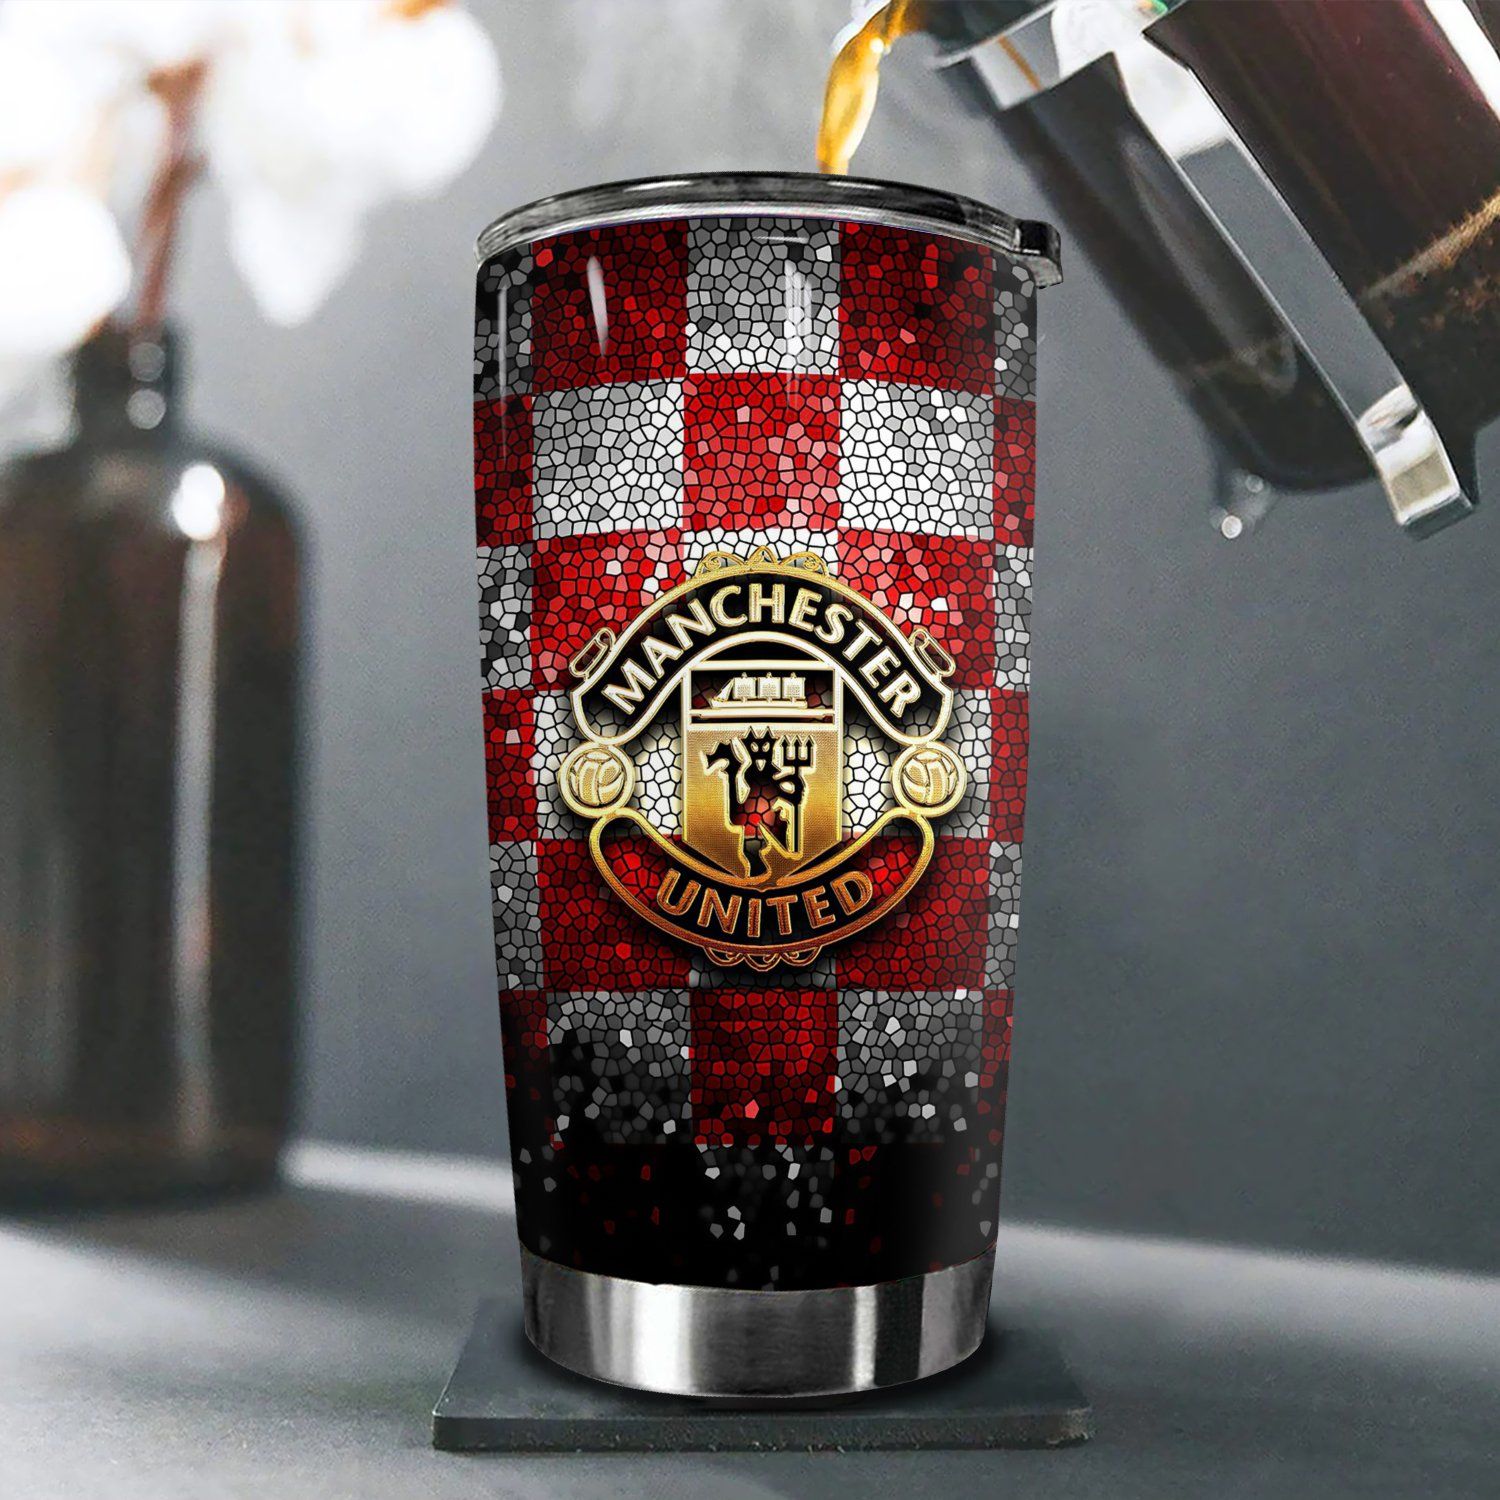  Logo CLB Manchester United Go DrinkFans Bóng Đá Cốc Giữ Nhiệt 600ml In tên, hình ảnh theo yêu cầu 